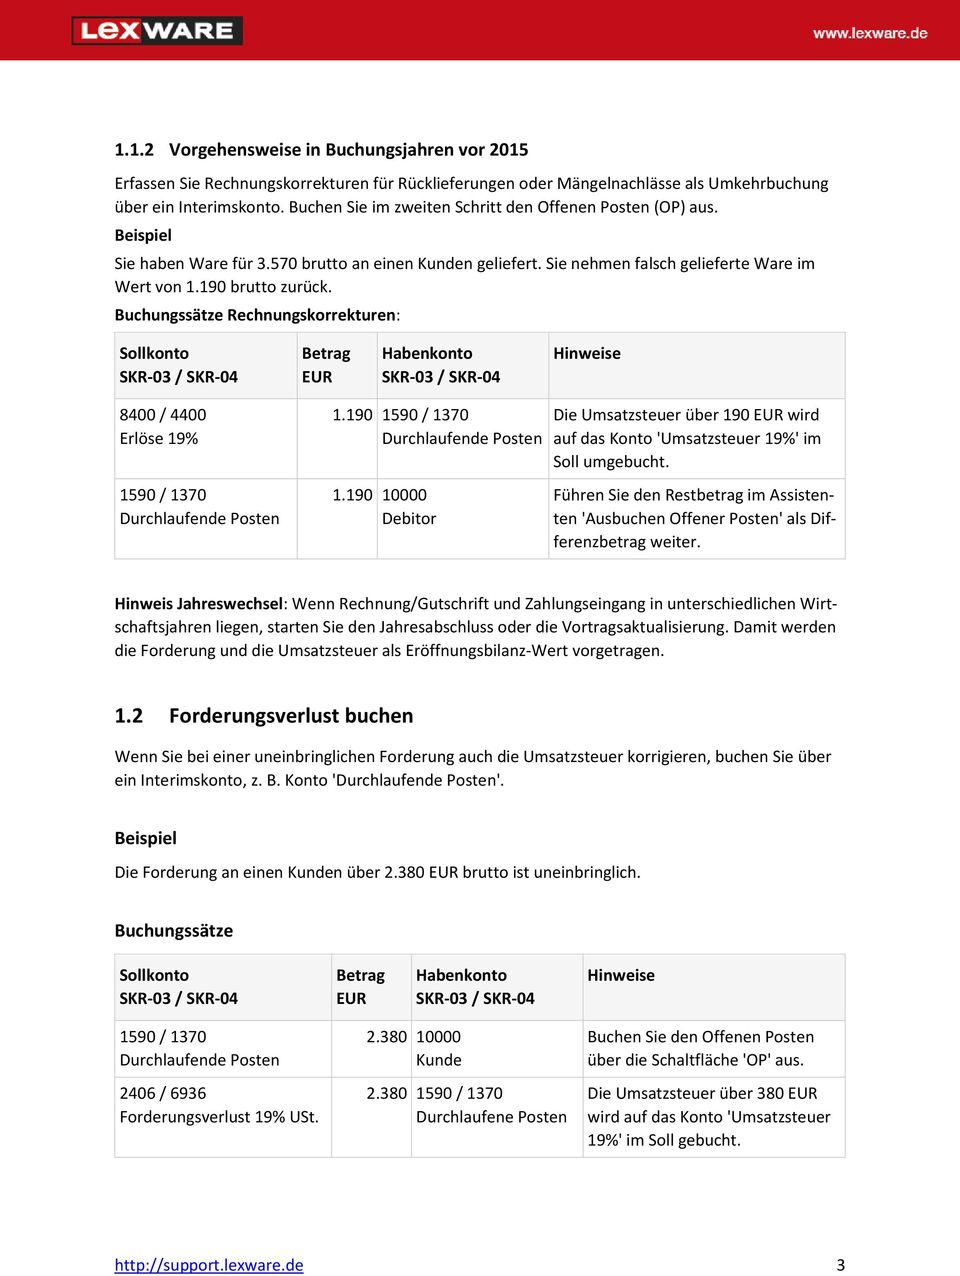 Buchungssätze Rechnungskorrekturen: Sollkonto Betrag EUR Habenkonto Hinweise 8400 / 4400 Erlöse 19% 1590 / 1370 Durchlaufende Posten 1.190 1590 / 1370 Durchlaufende Posten 1.